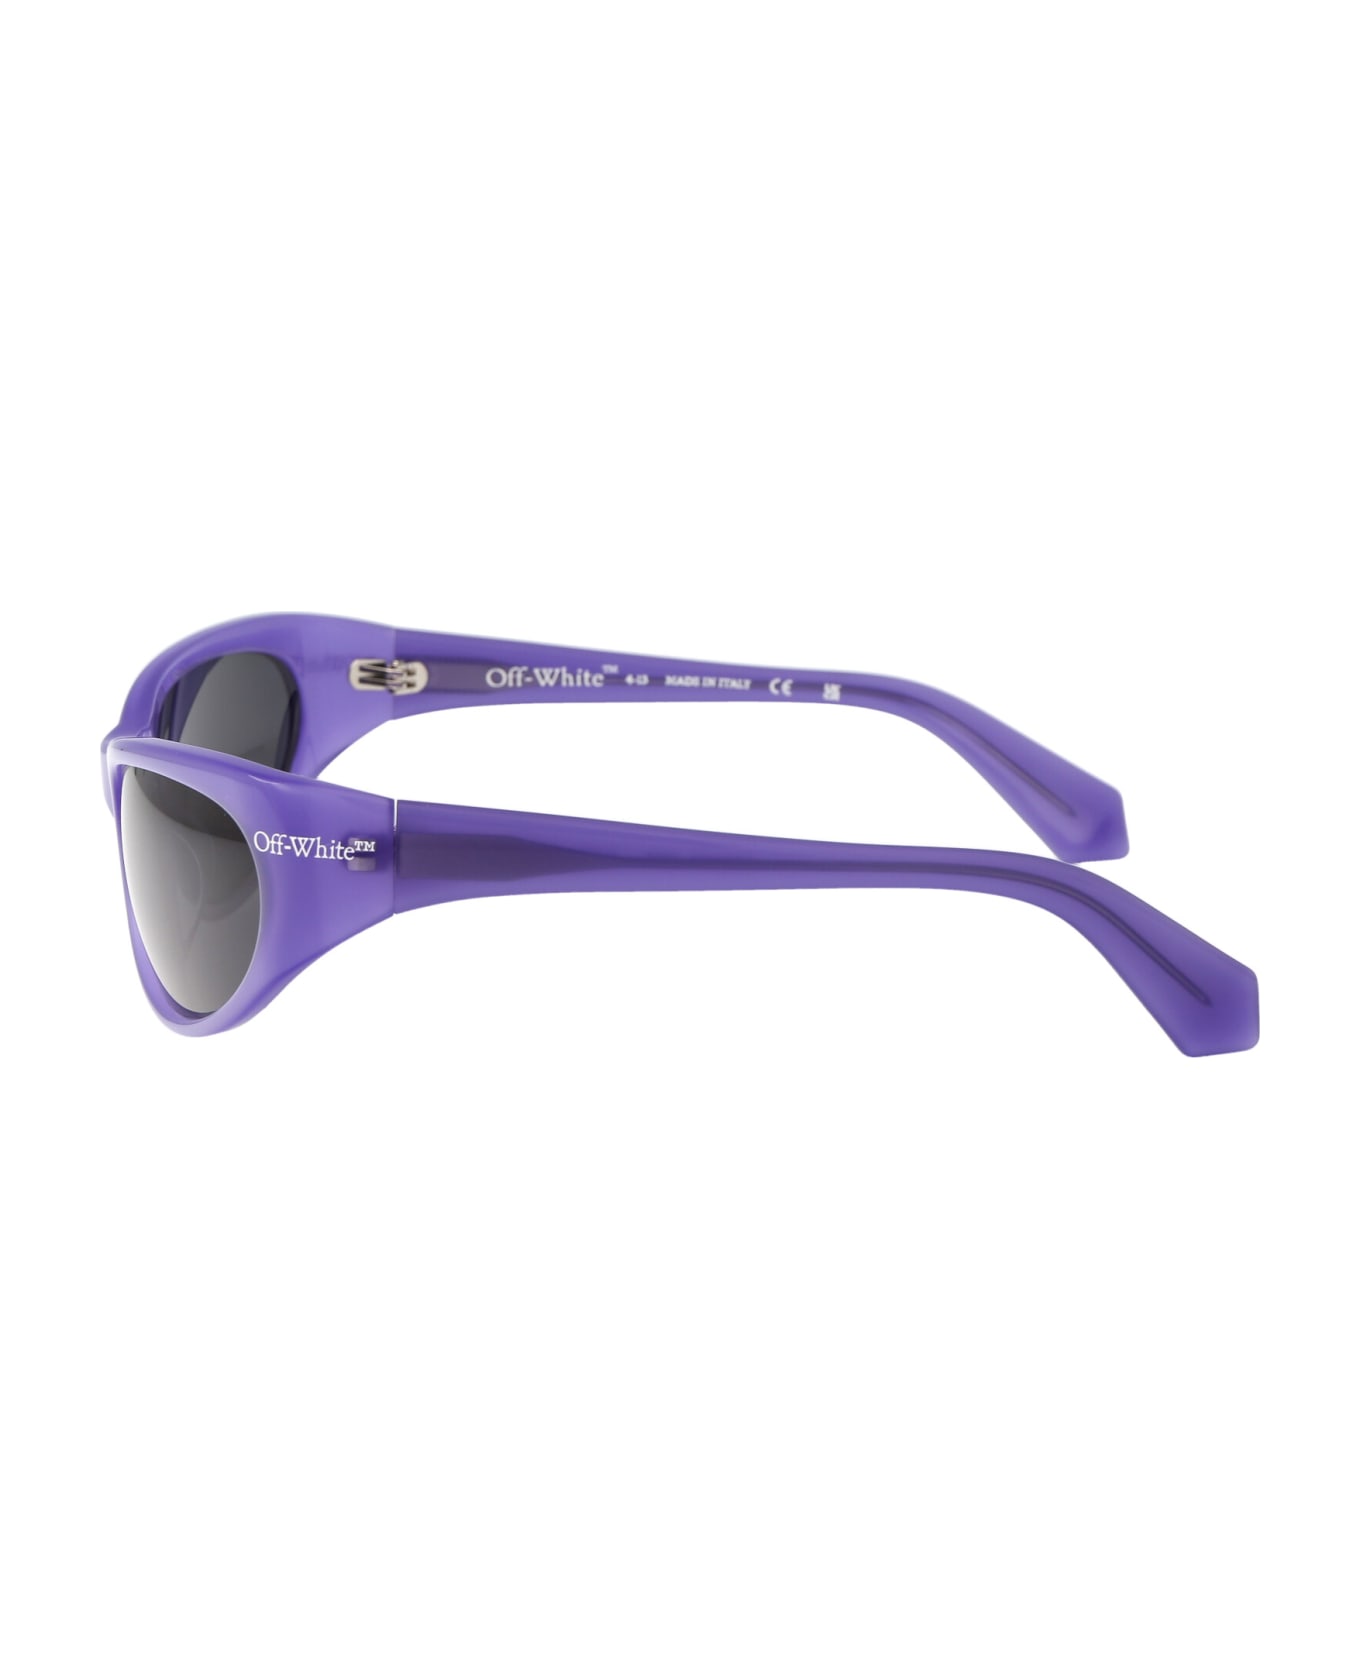 Off-White Napoli Sunglasses - 3707 PURPLE